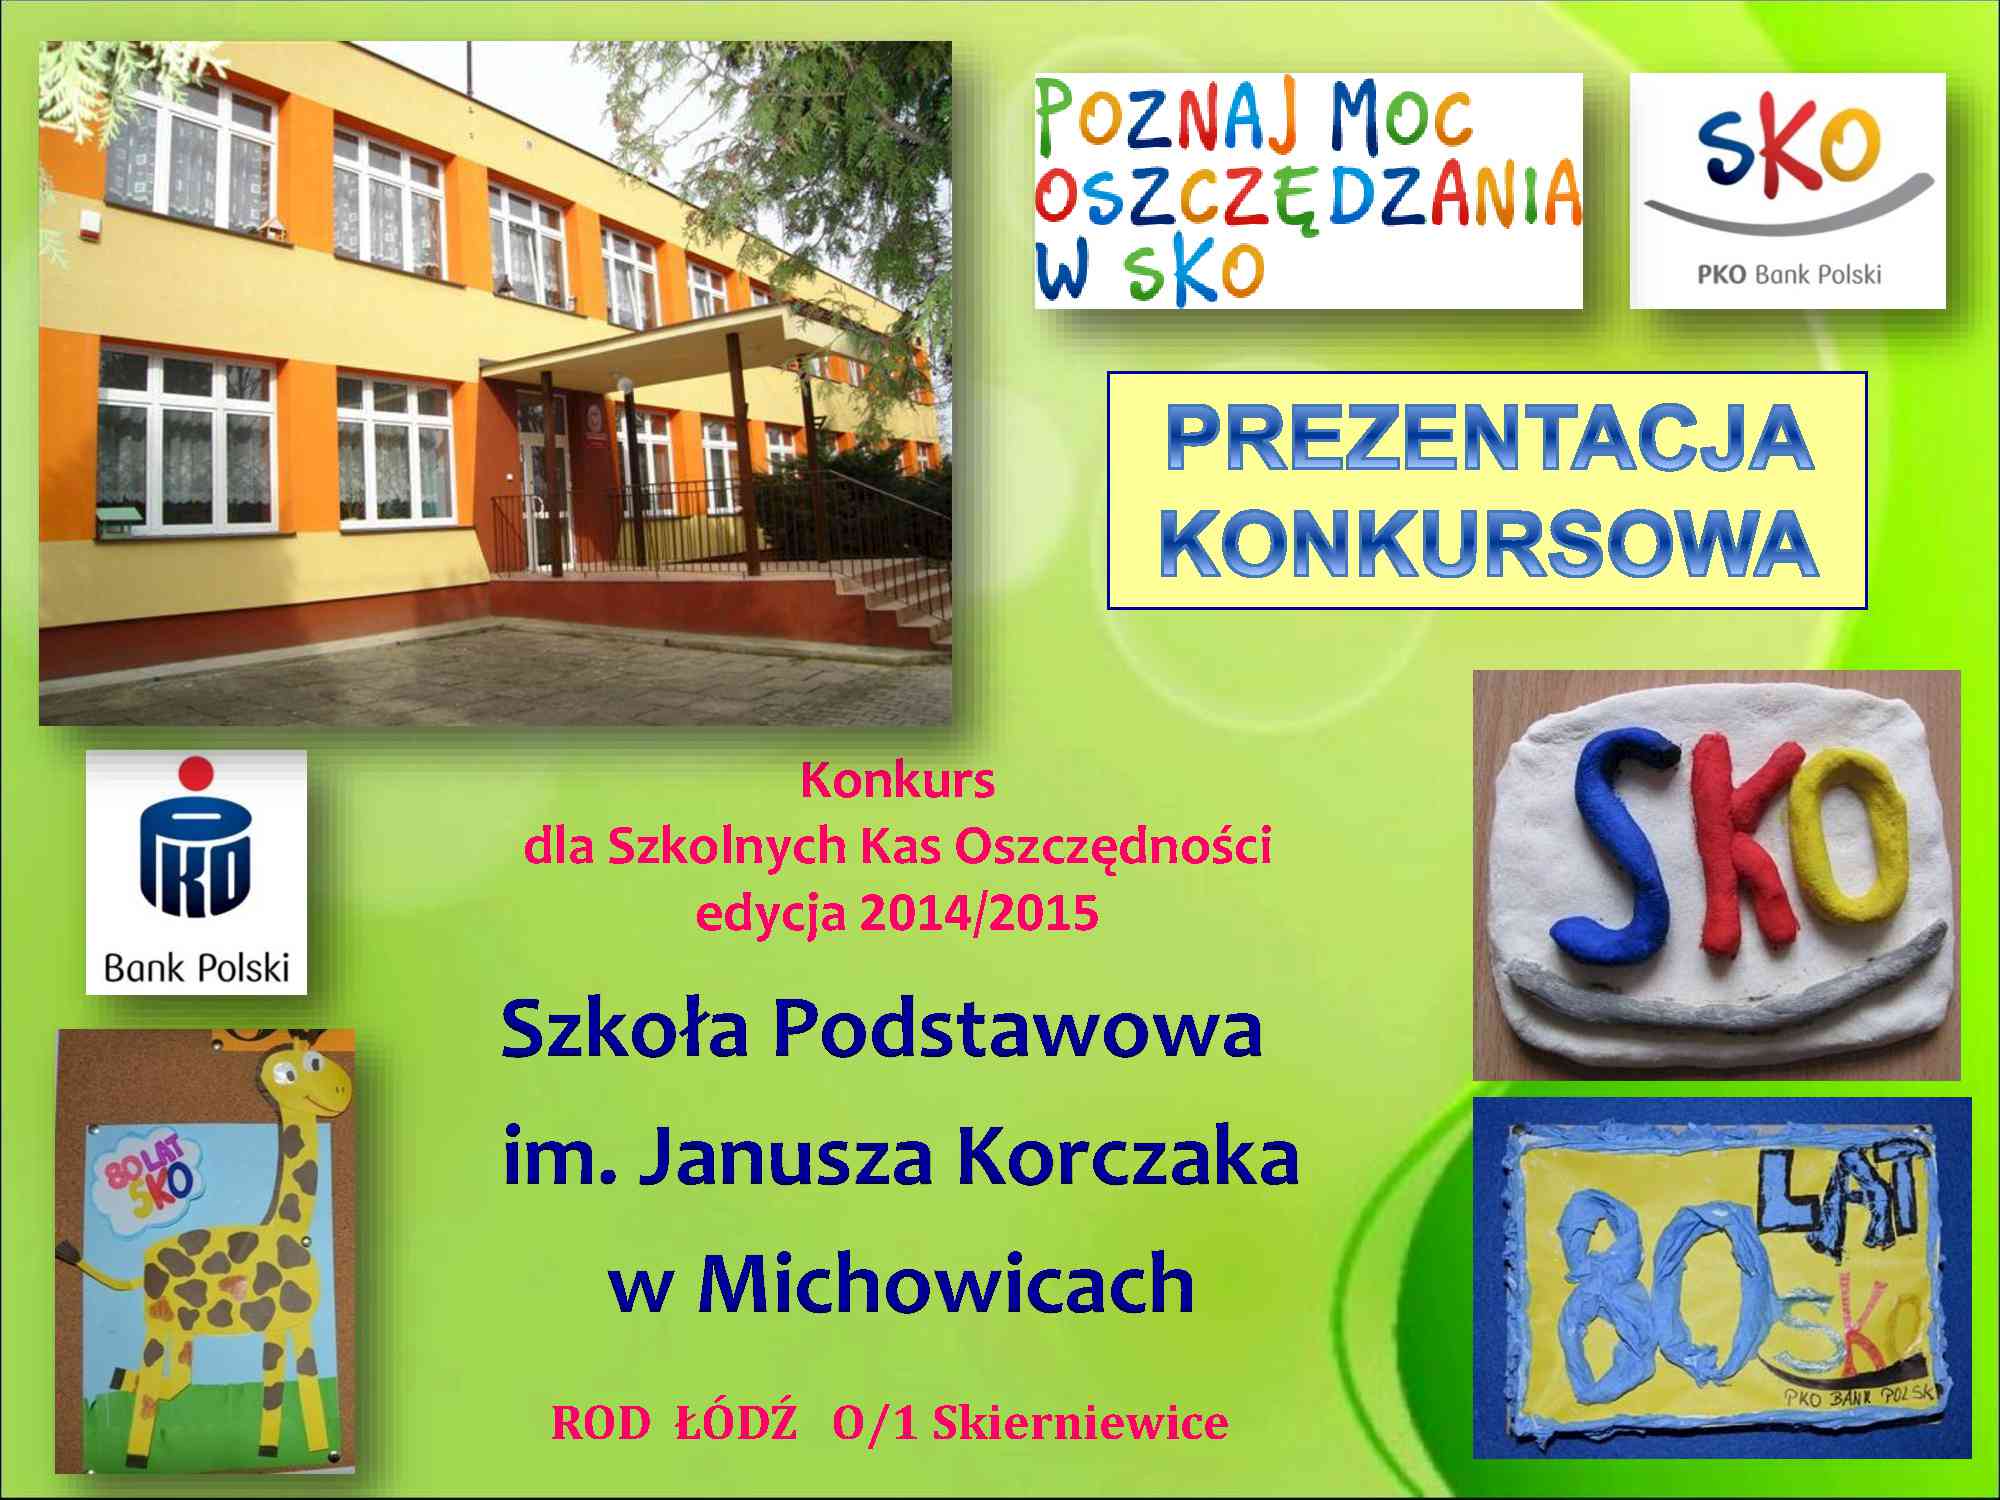 Szkoła Podstawowa w Michowicach im. Janusza Korczaka